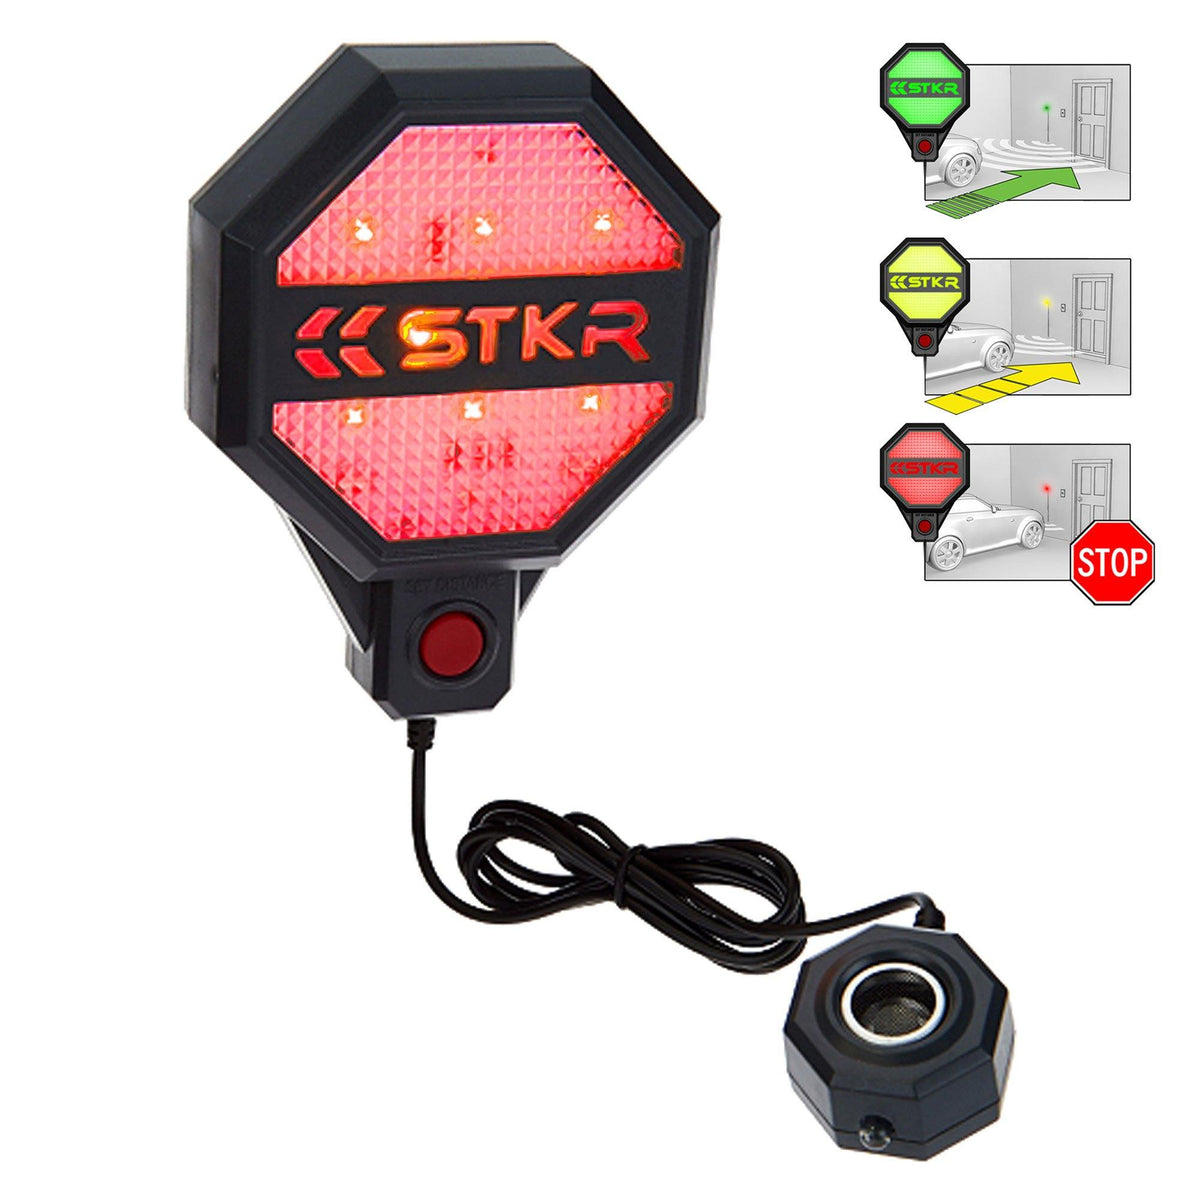 STKR - Adjustable Garage Parking Sensor - STKR Concepts